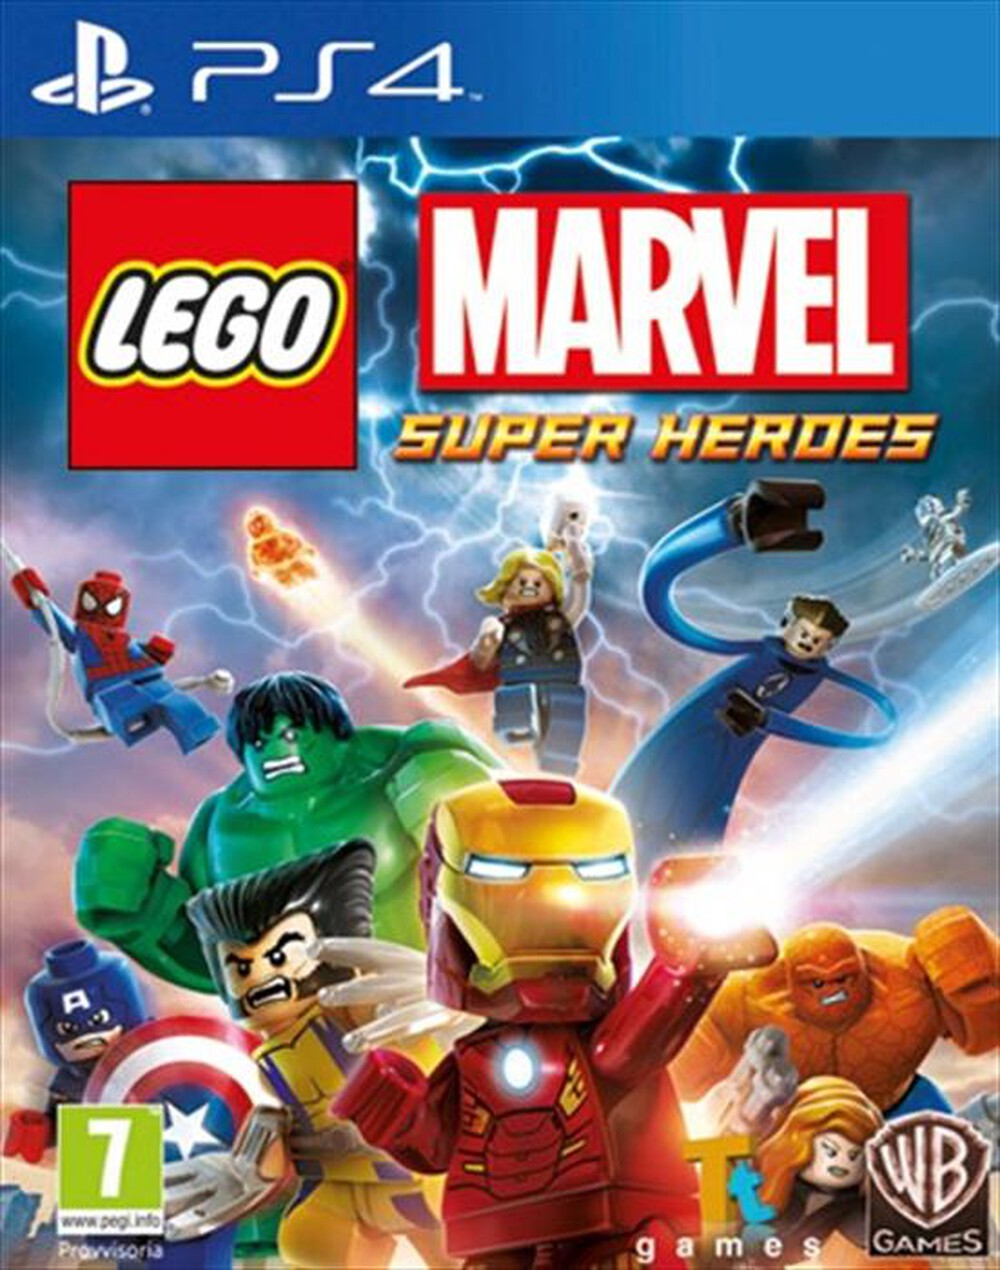 "WARNER GAMES - Lego Marvel Super Heroes PS4"